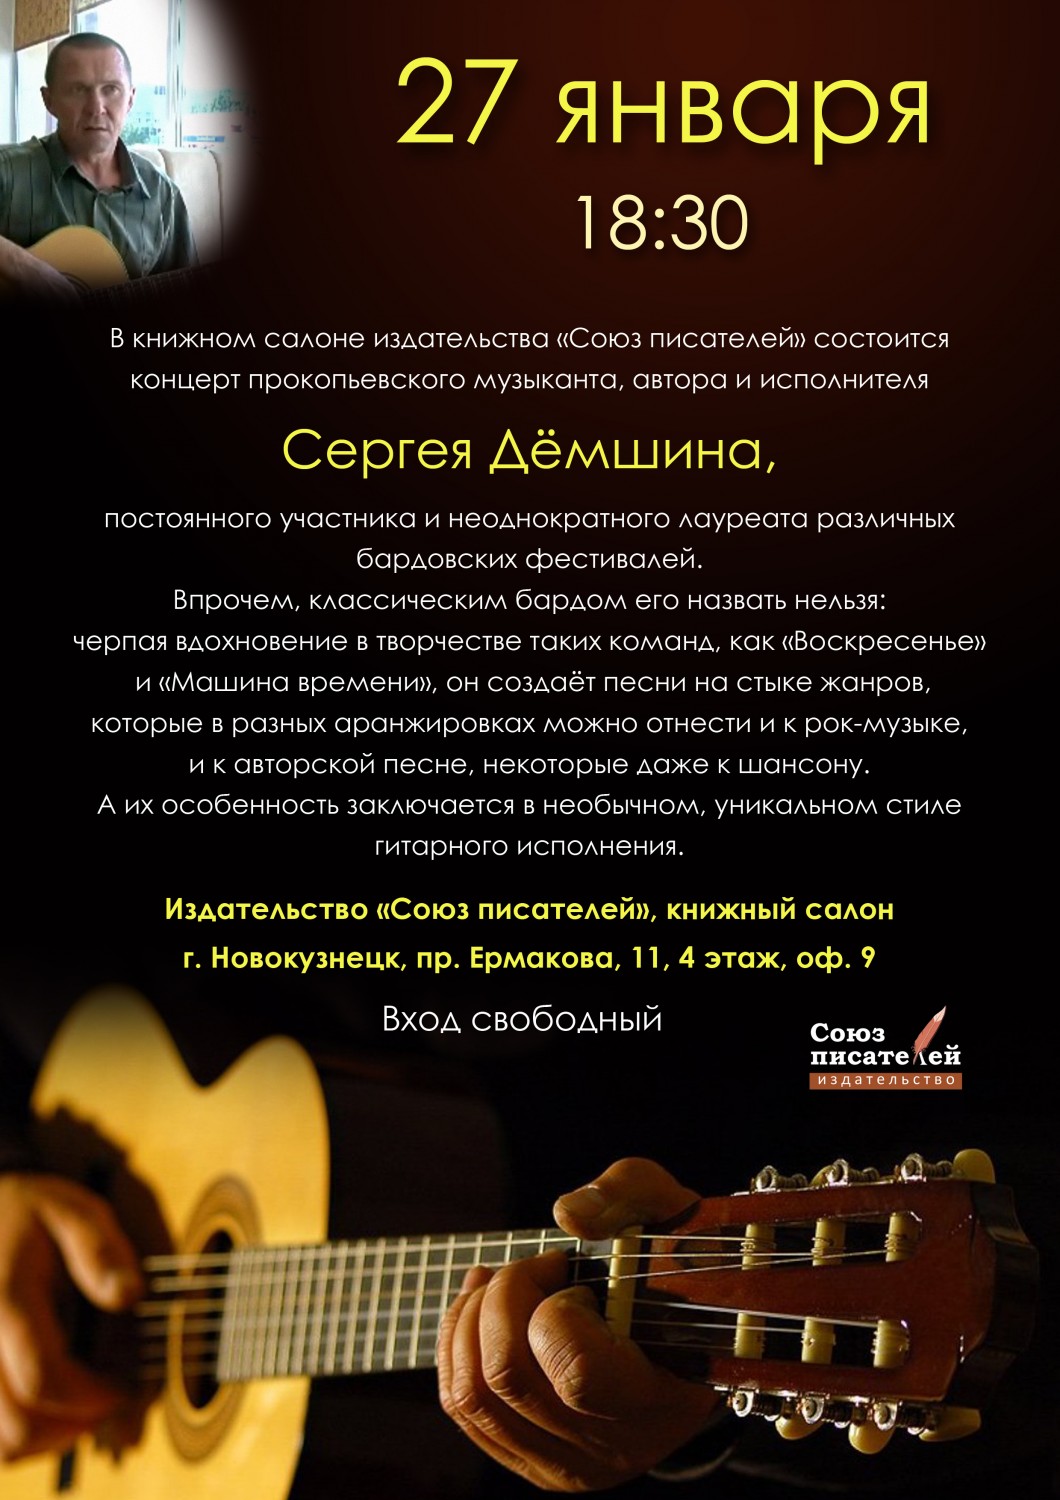 Приглашаем всех желающих на концерт Сергея Демшина